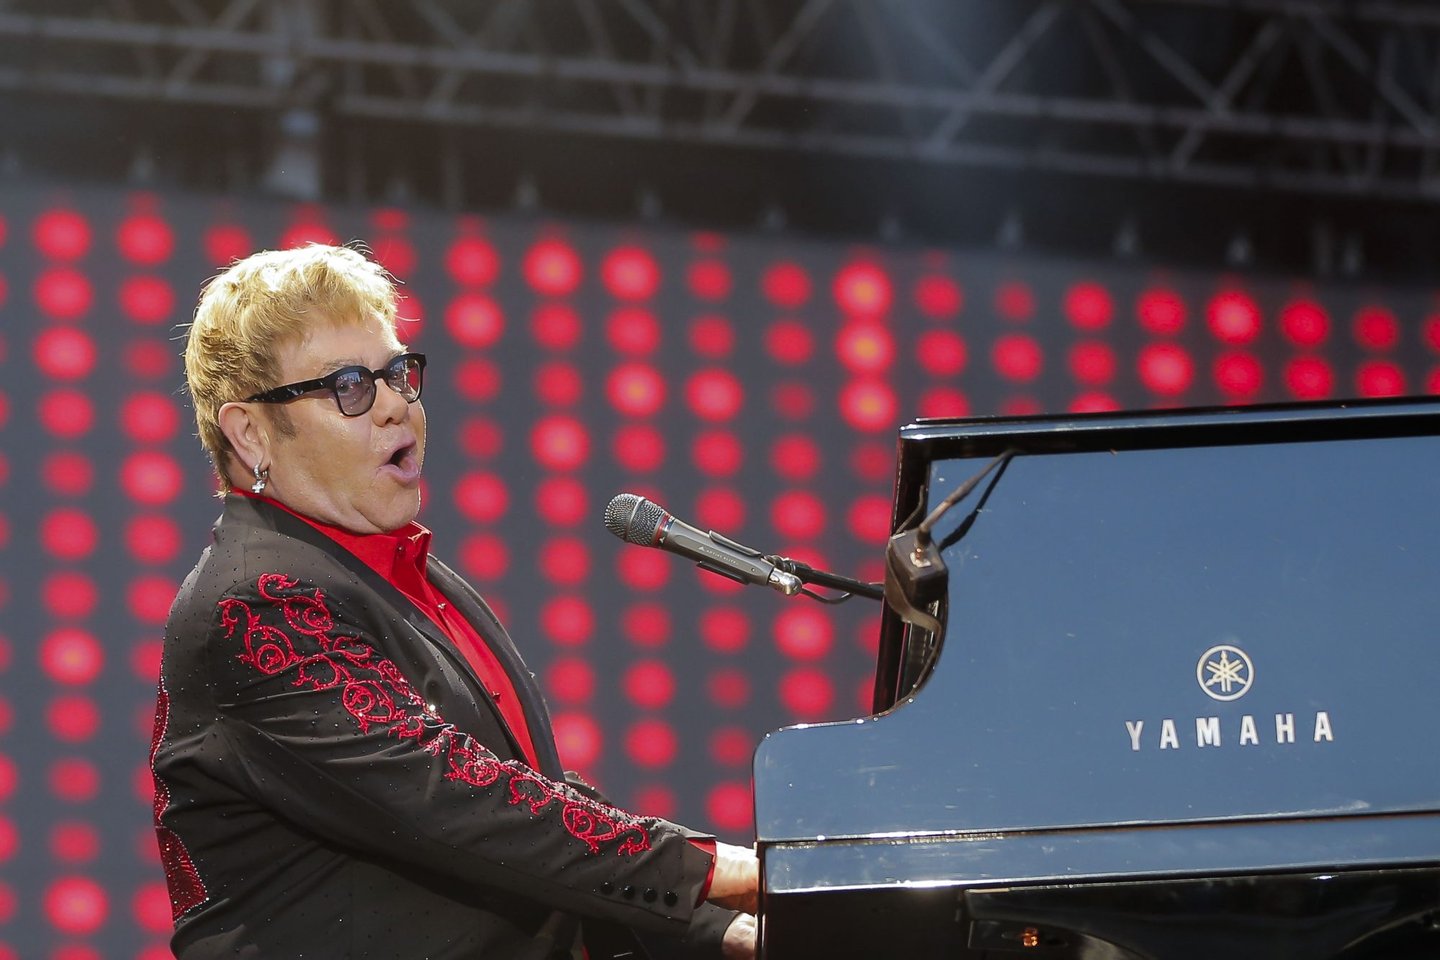 Festival MarÃ© Vivas Elton John